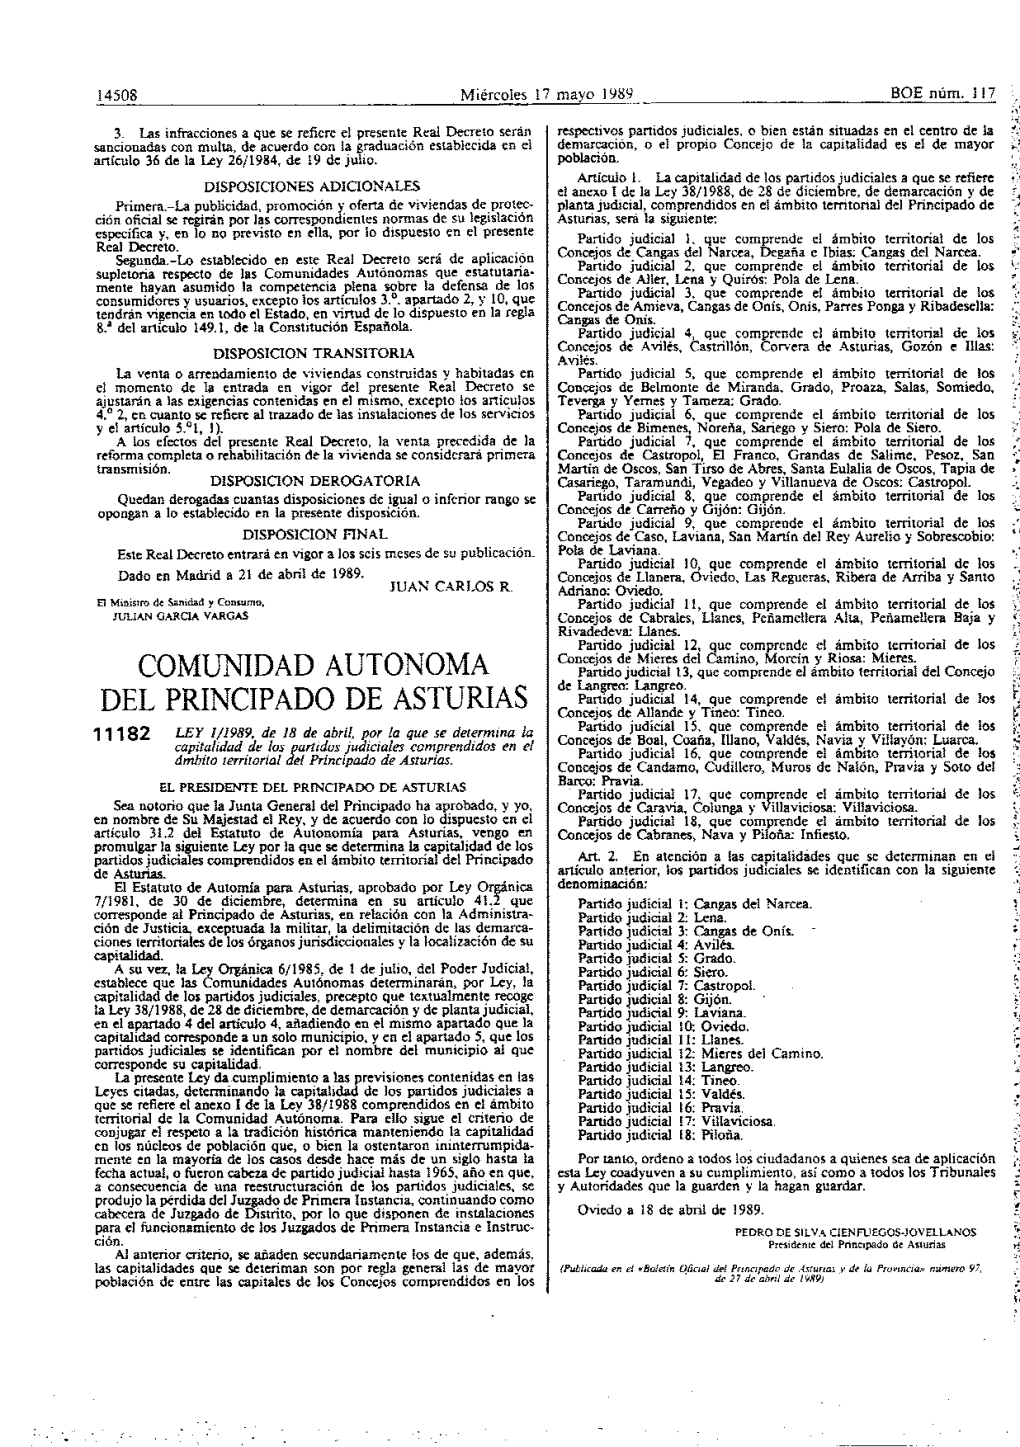 Comunidad Autonoma Del Principado De Asturias